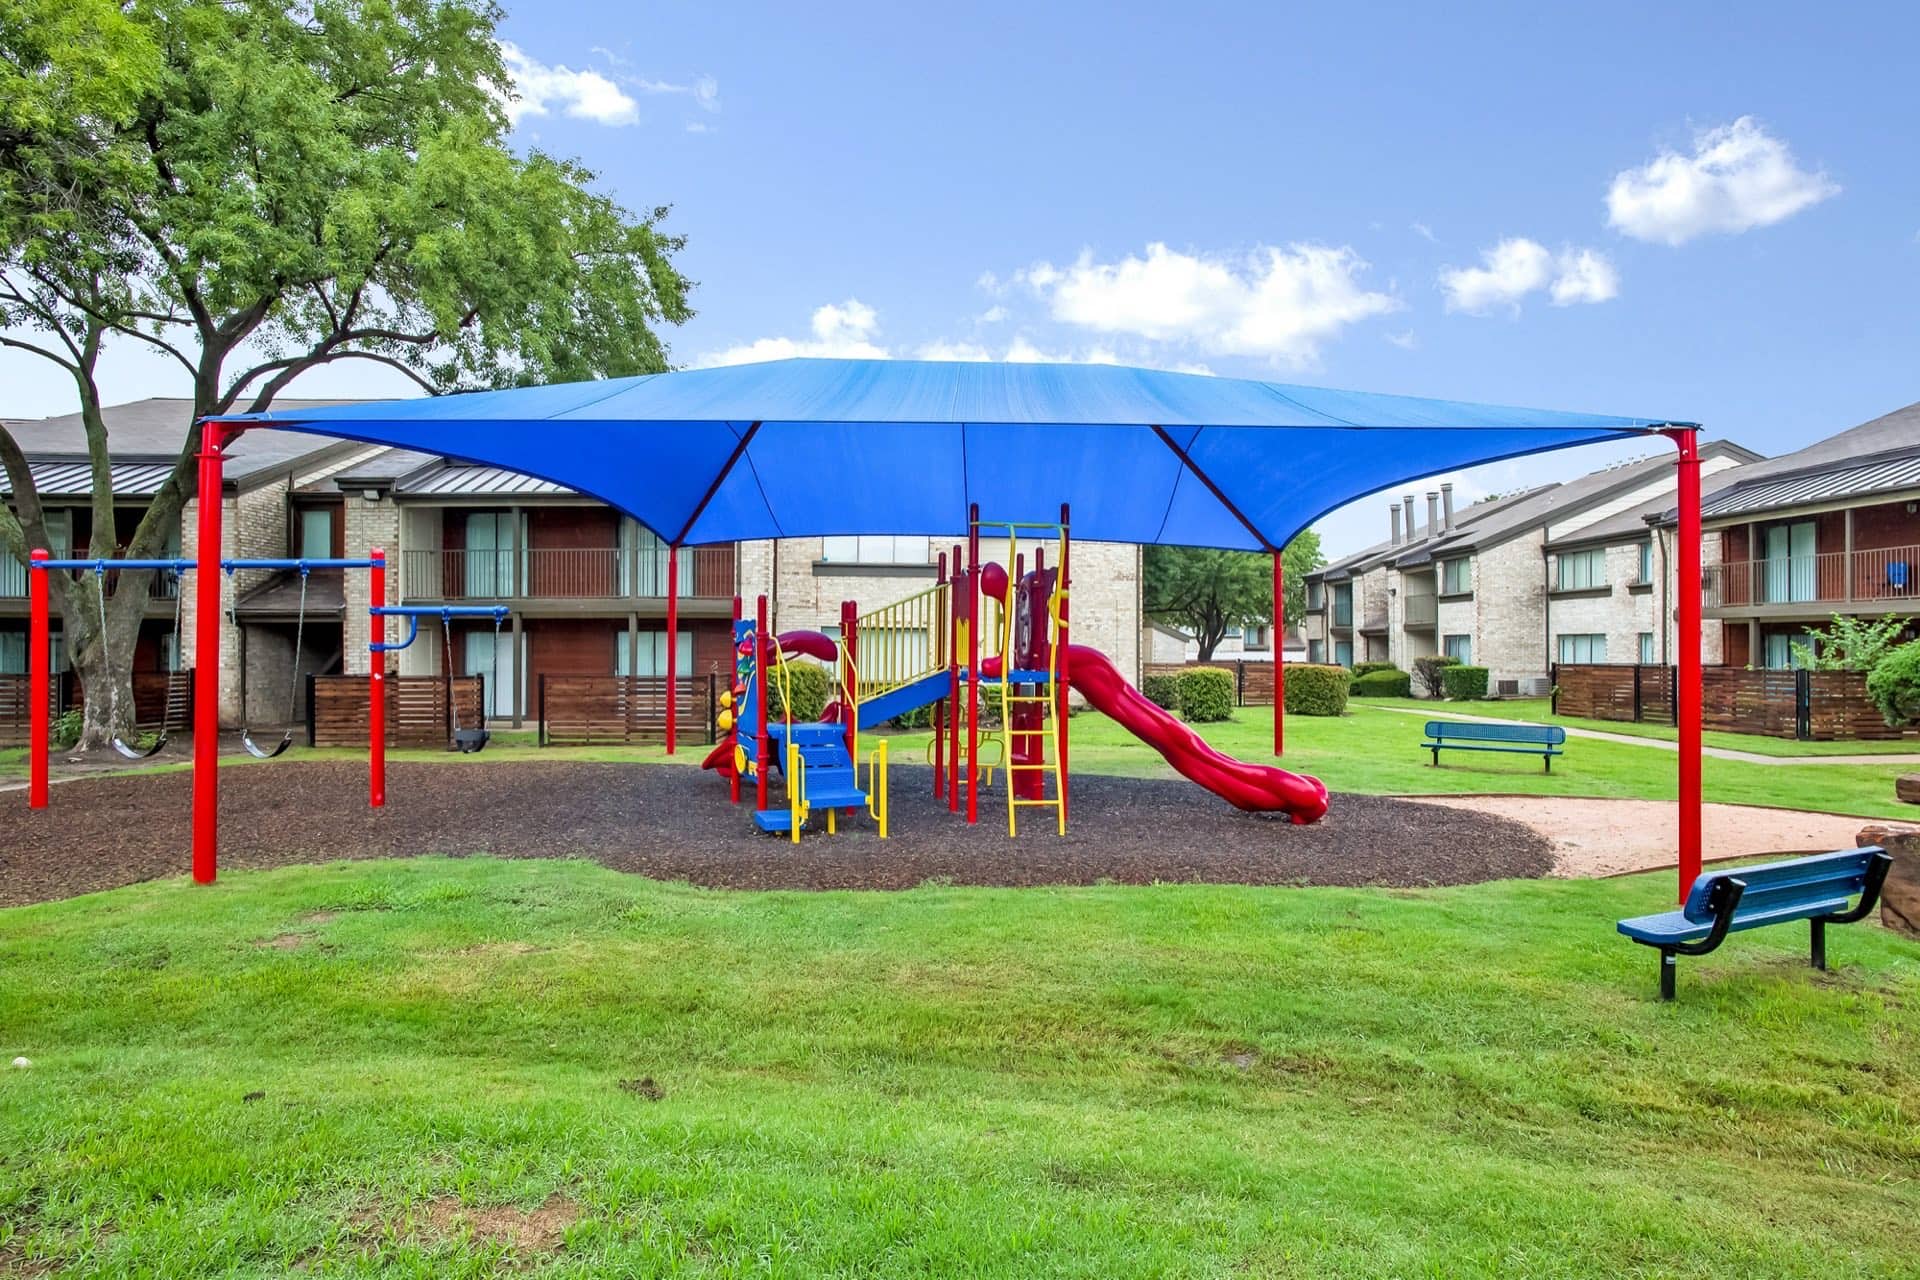 Covered playground